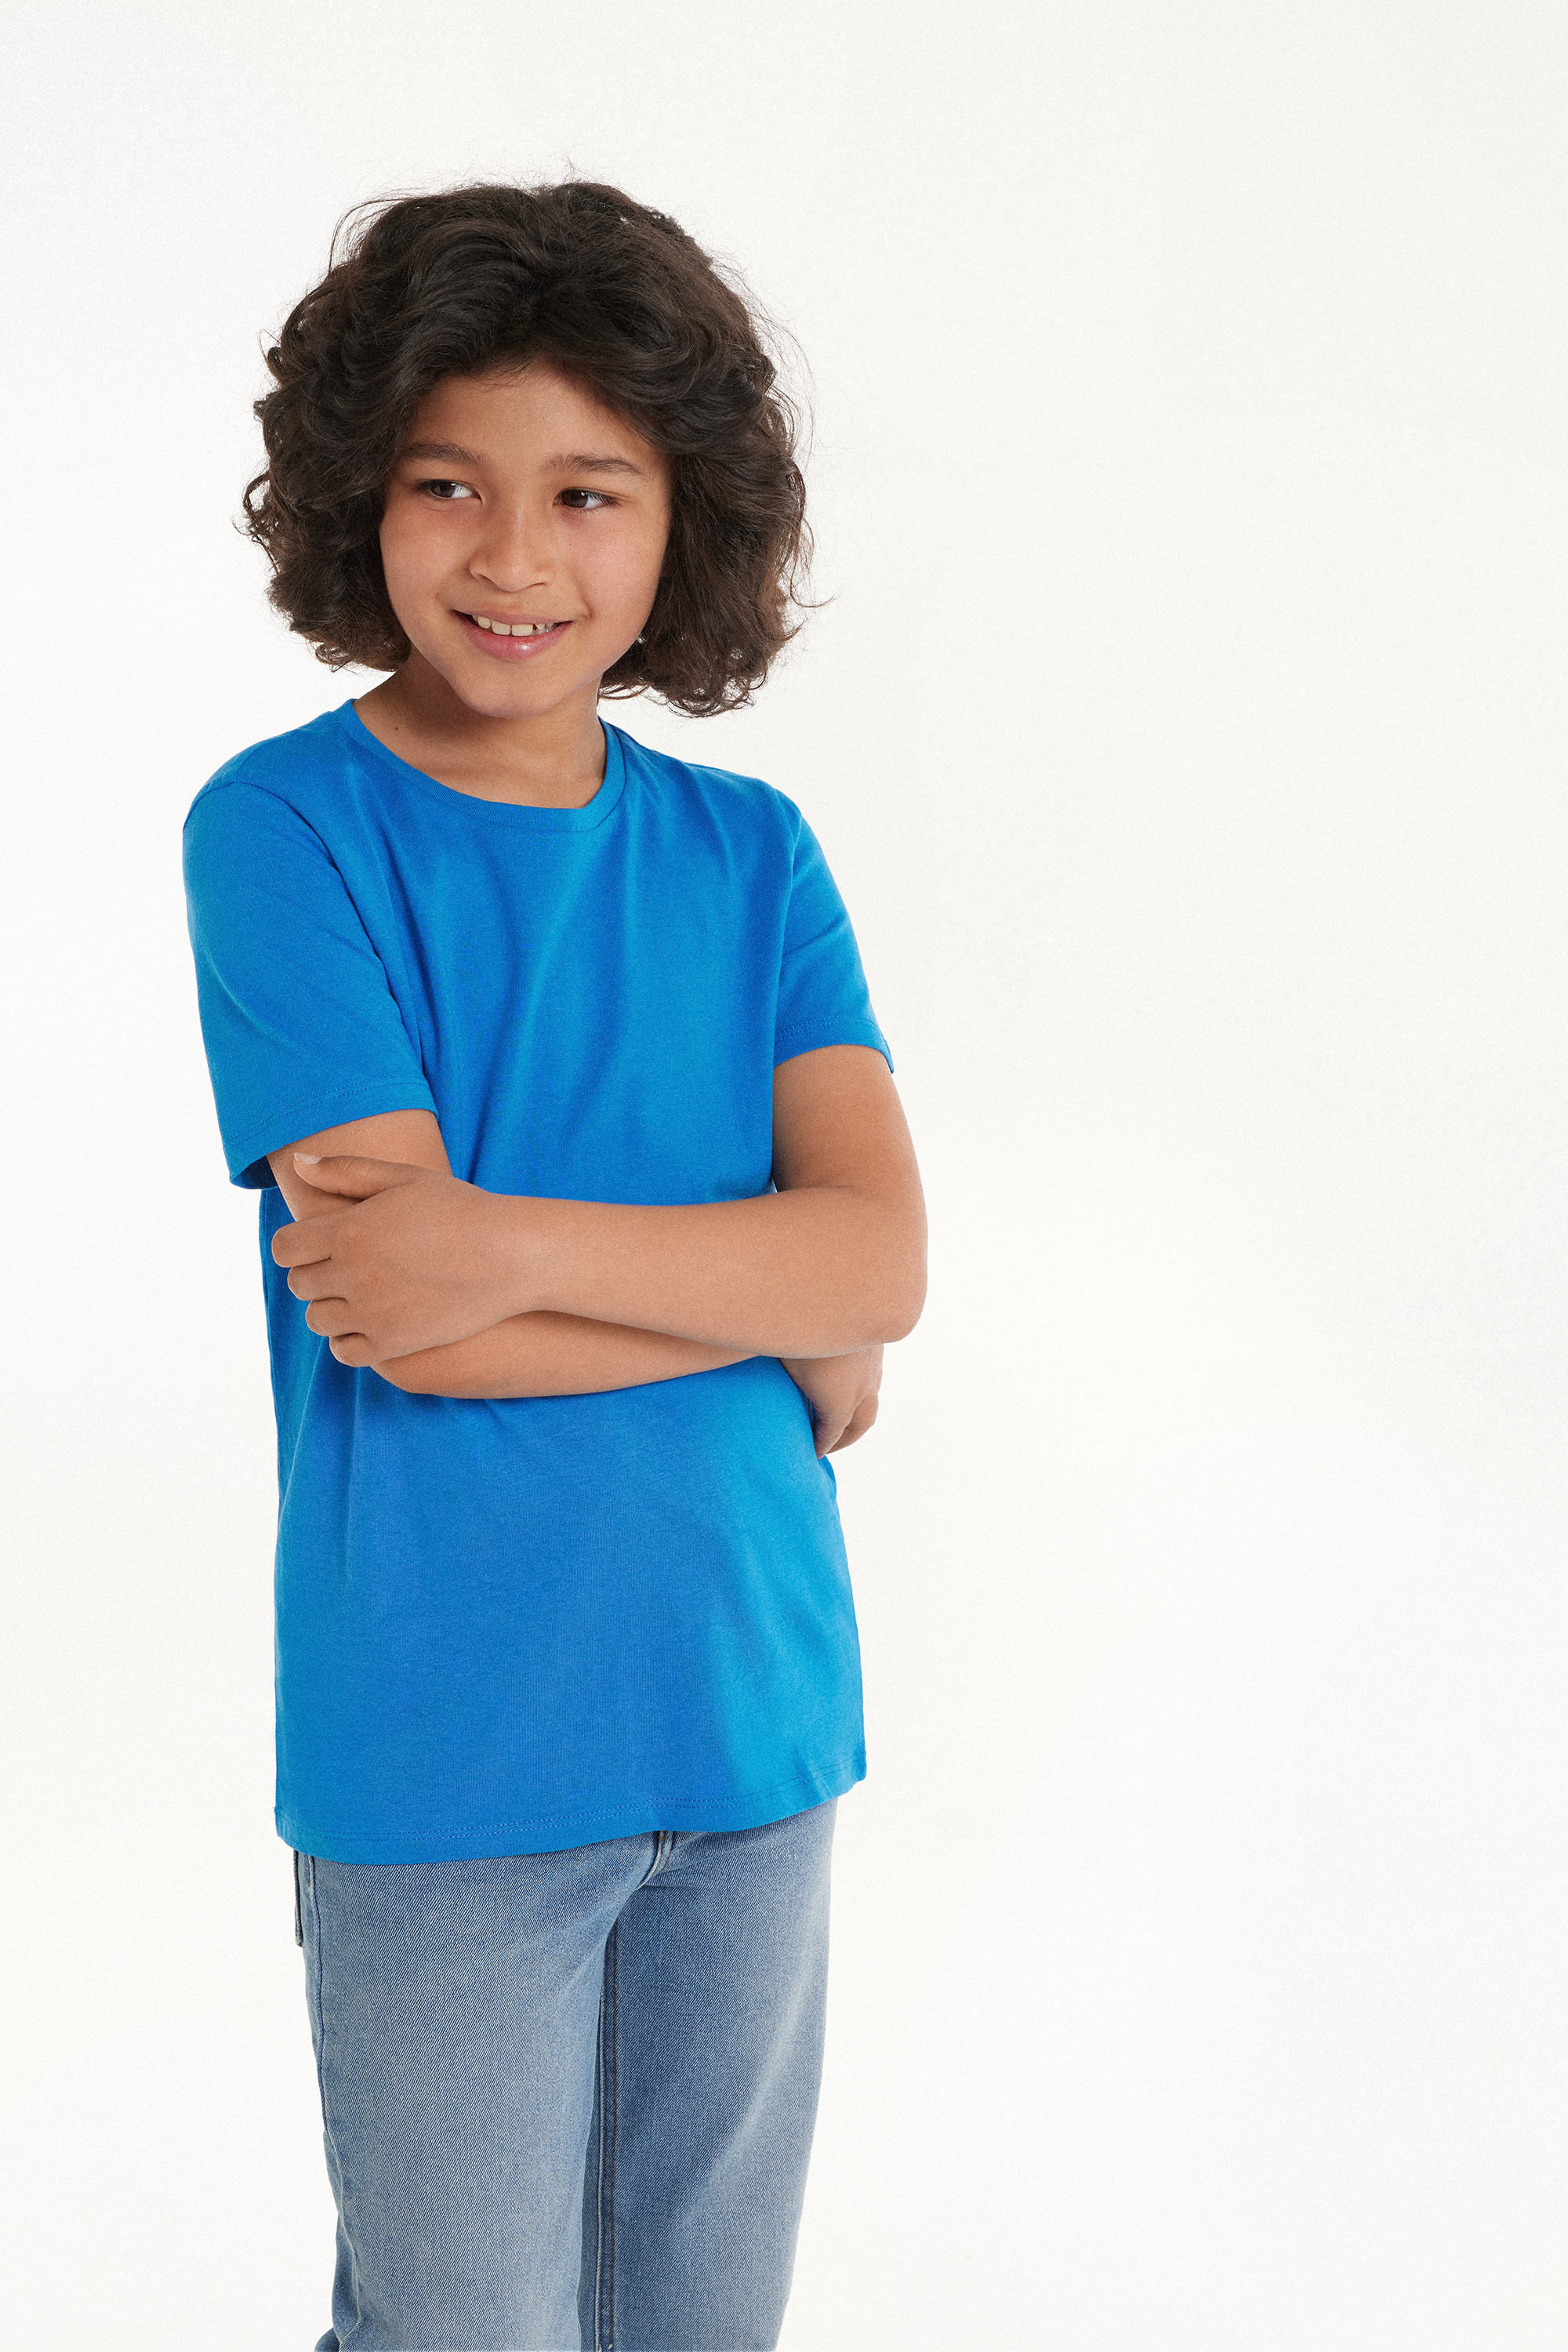 Unisex Kids’ 100% Cotton Basic T-shirt with Rounded Neck